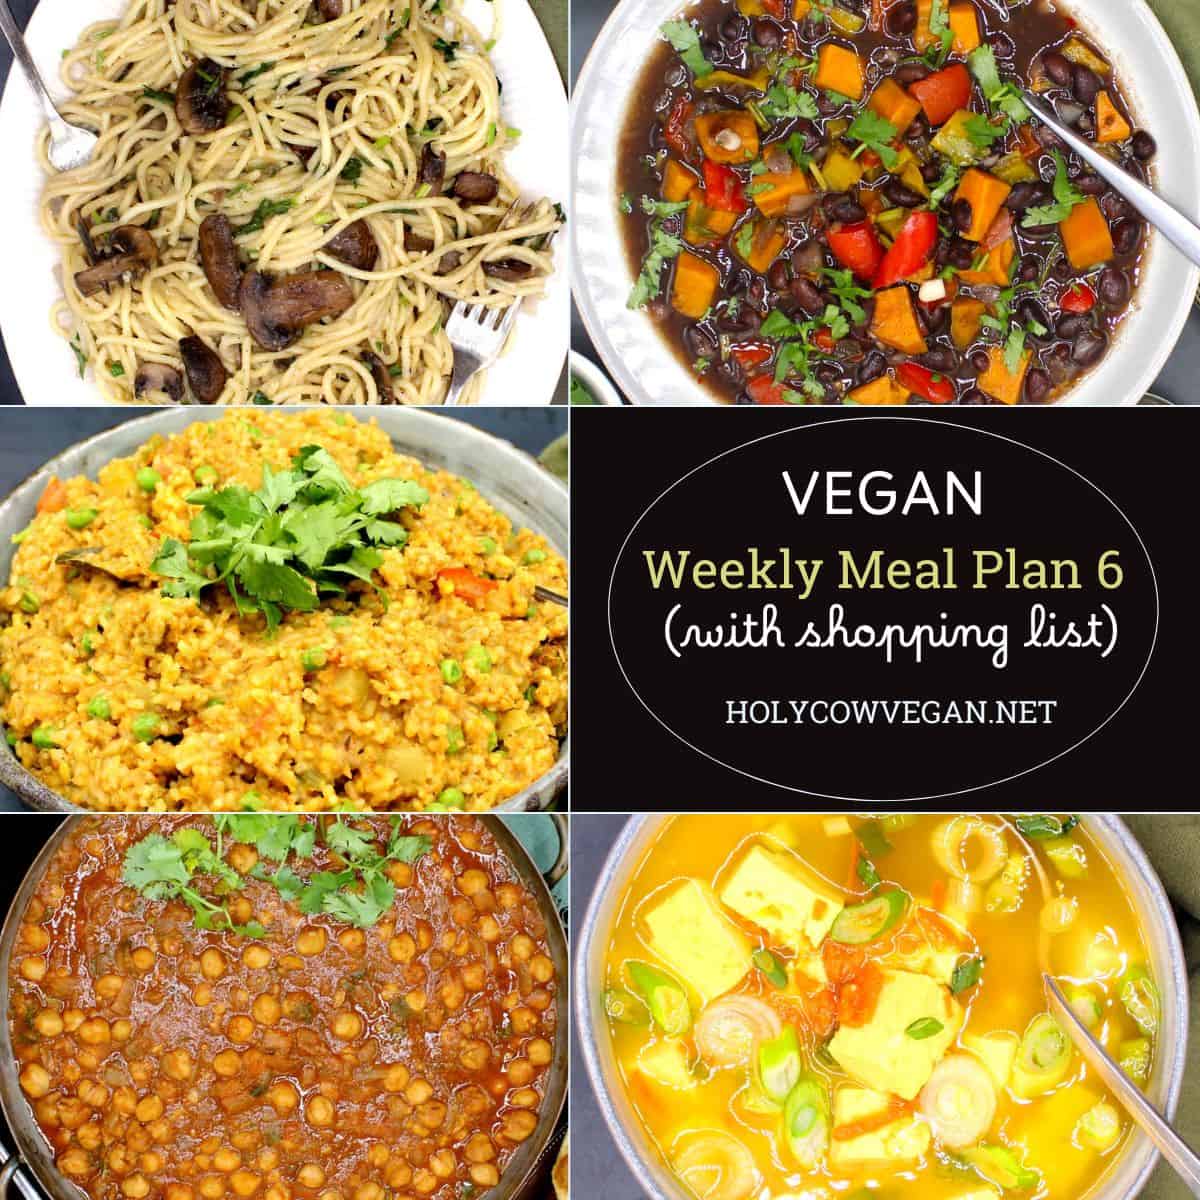 Vegan Meal Plan 6 - Holy Cow Vegan